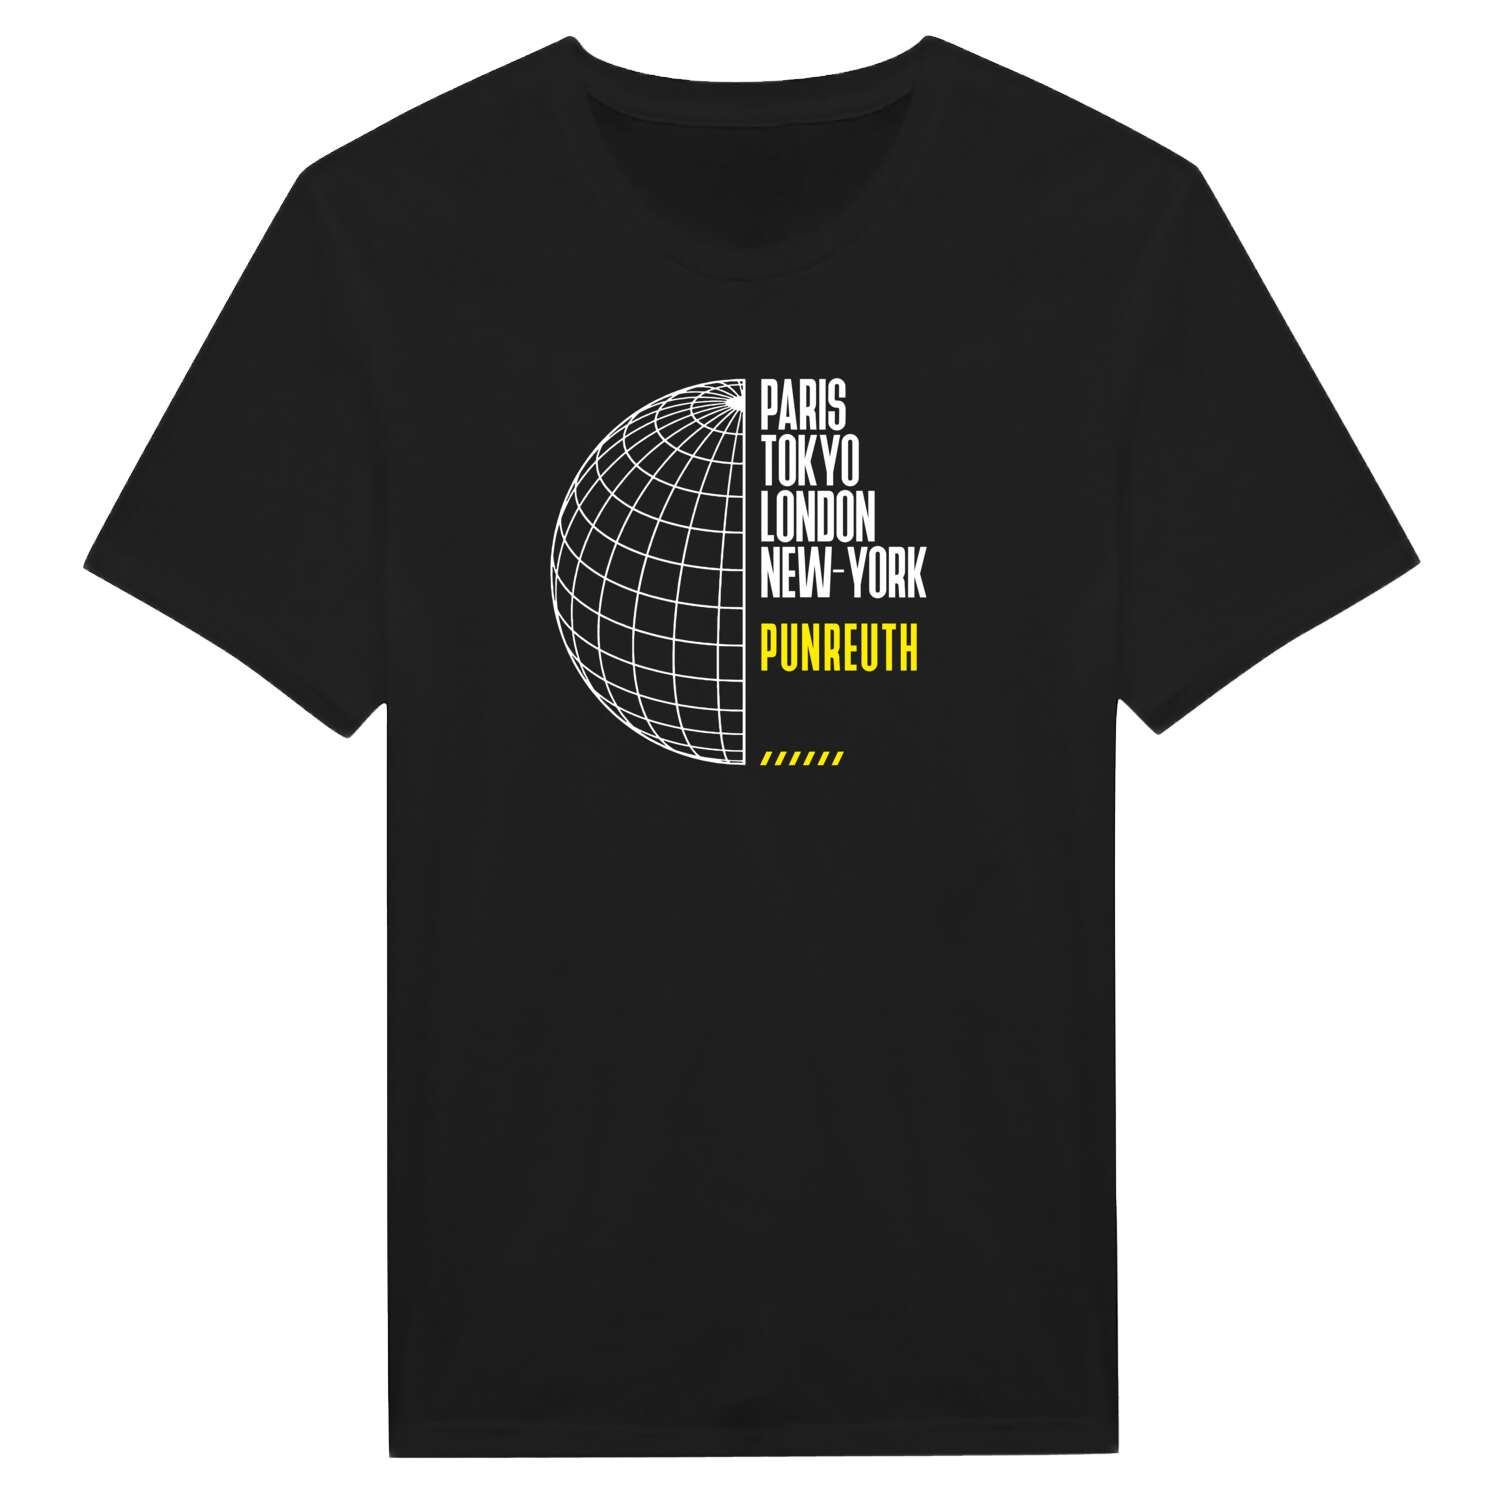 Punreuth T-Shirt »Paris Tokyo London«